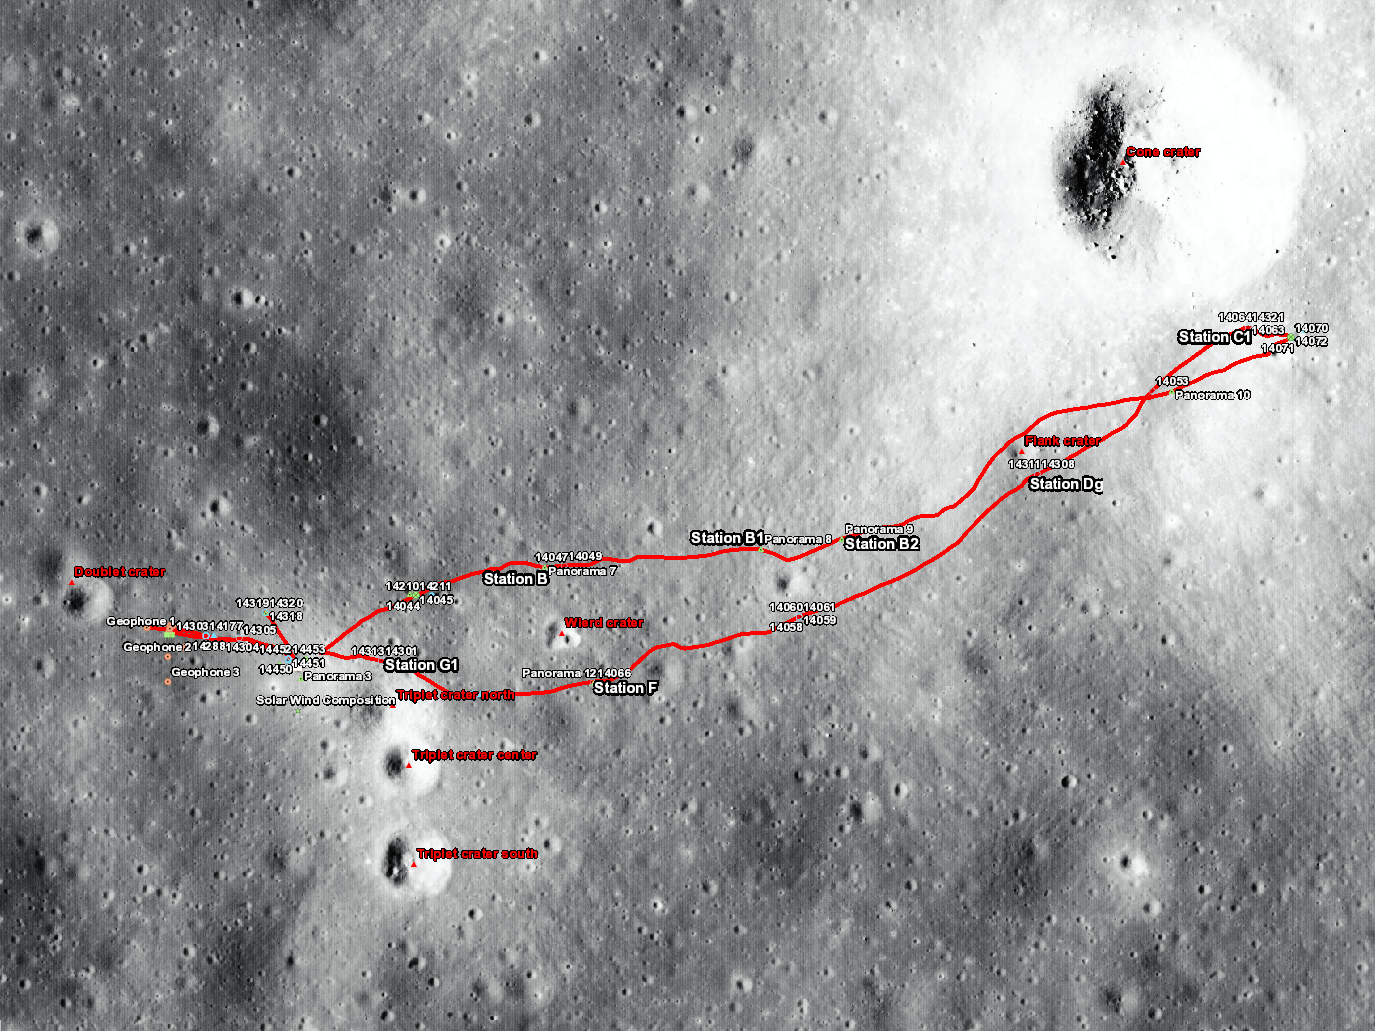 Apollo 14 sample locations